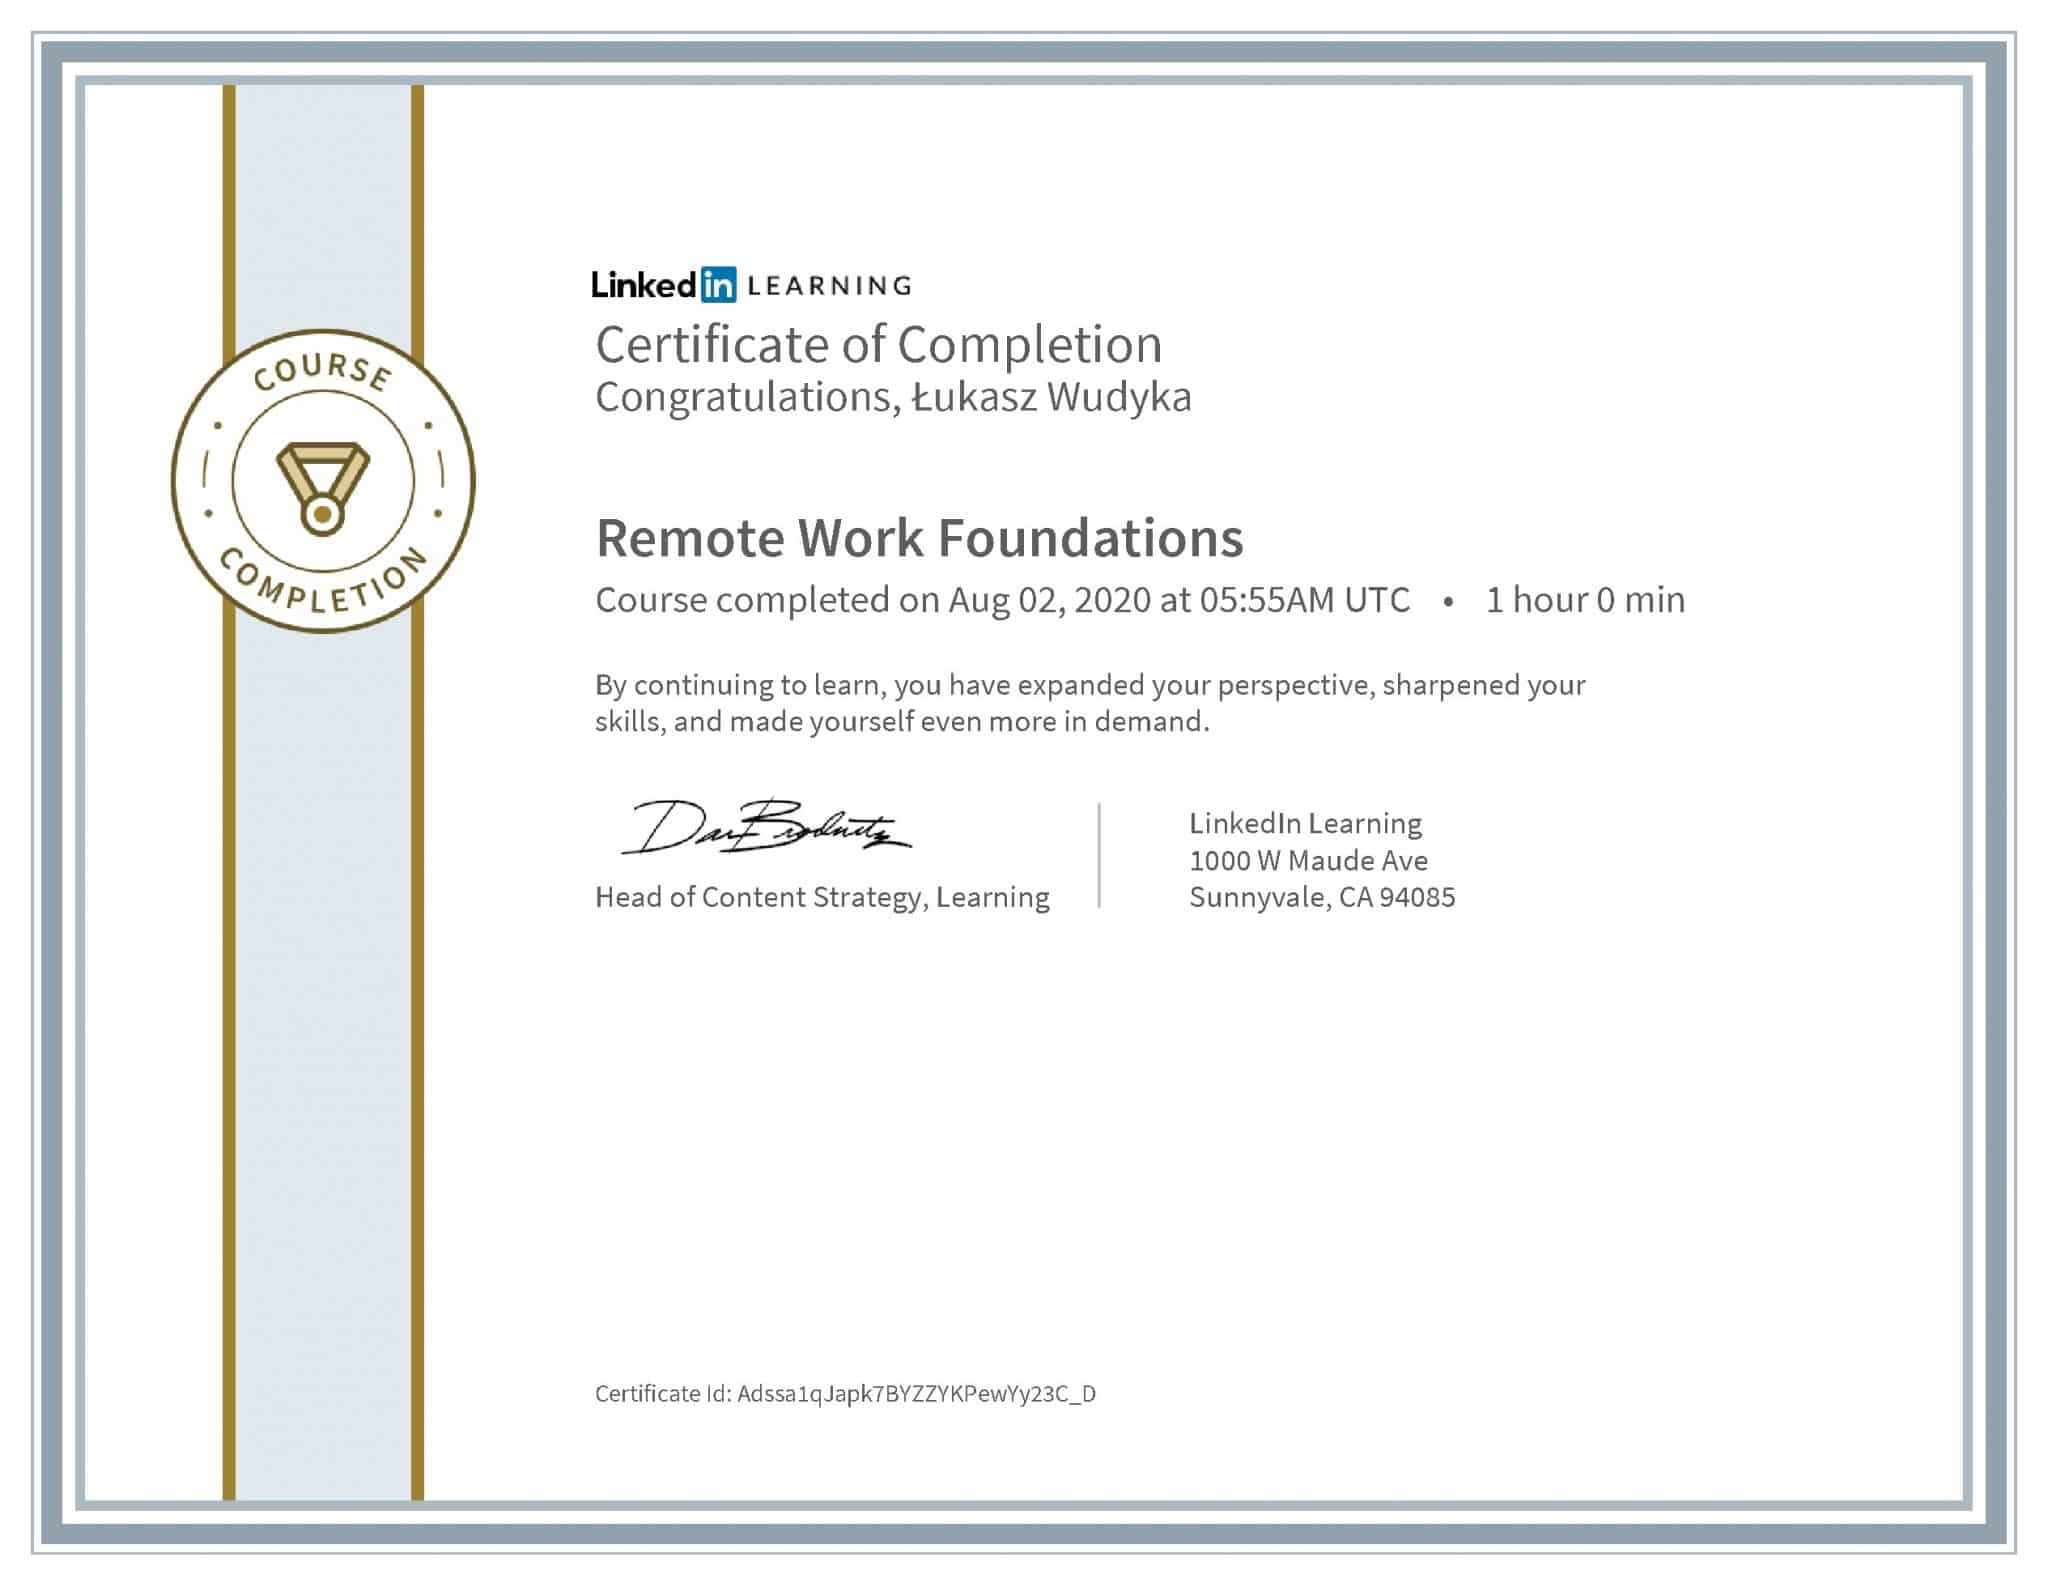 Łukasz Wudyka certyfikat LinkedIn Remote Work Foundations